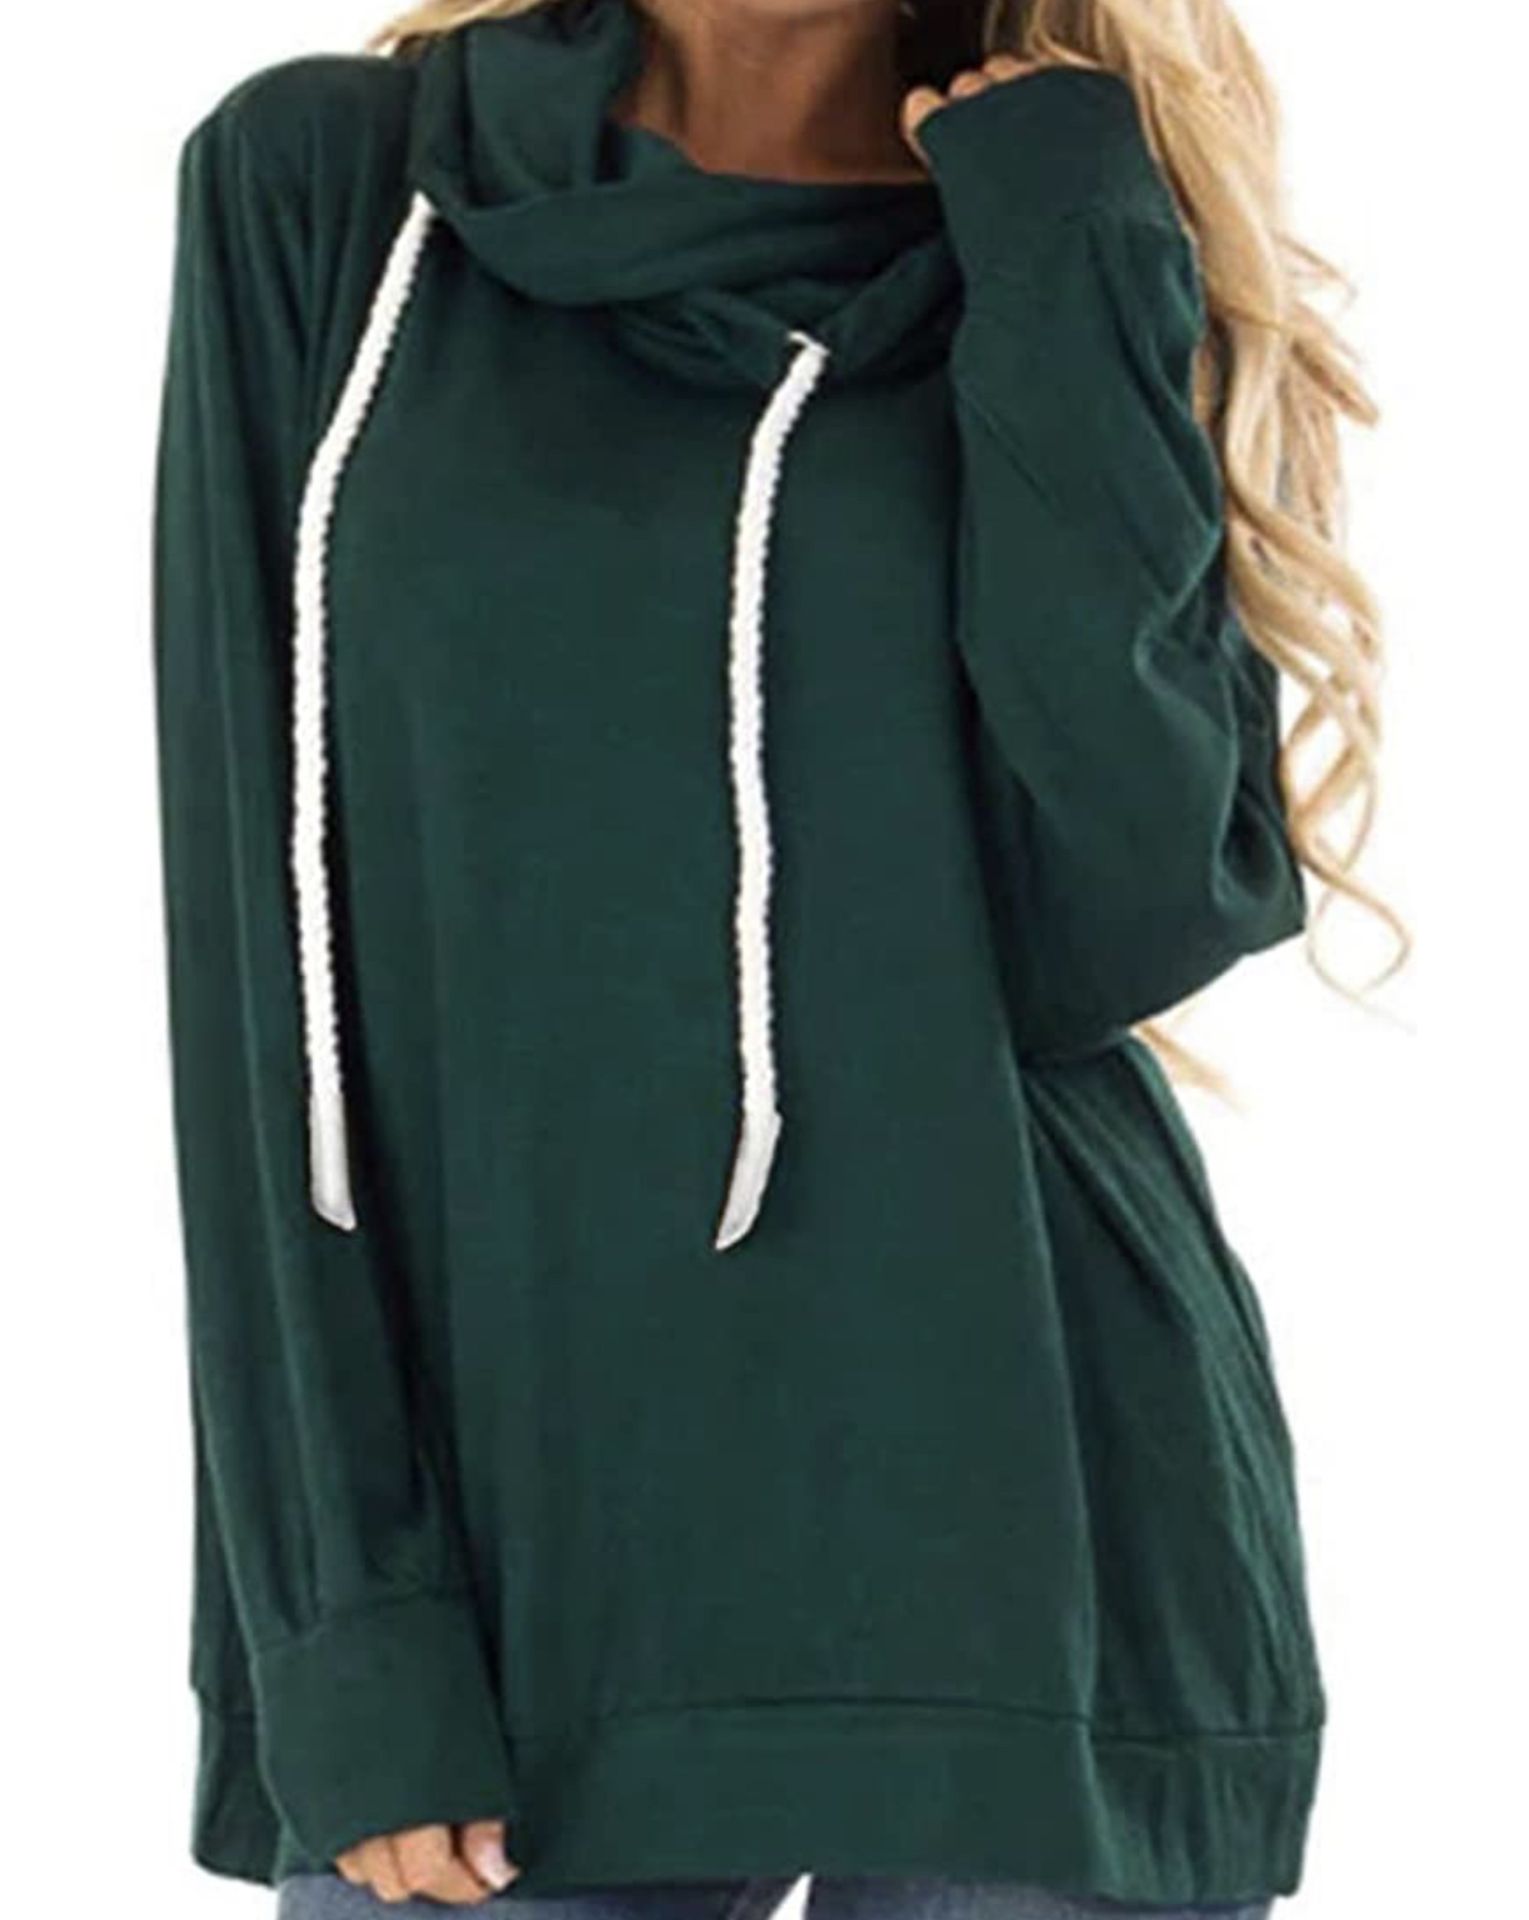 RRP £22.99 Women's Casual Long Sleeve Tie Dye Hoodie Sweatshirt Top, XL